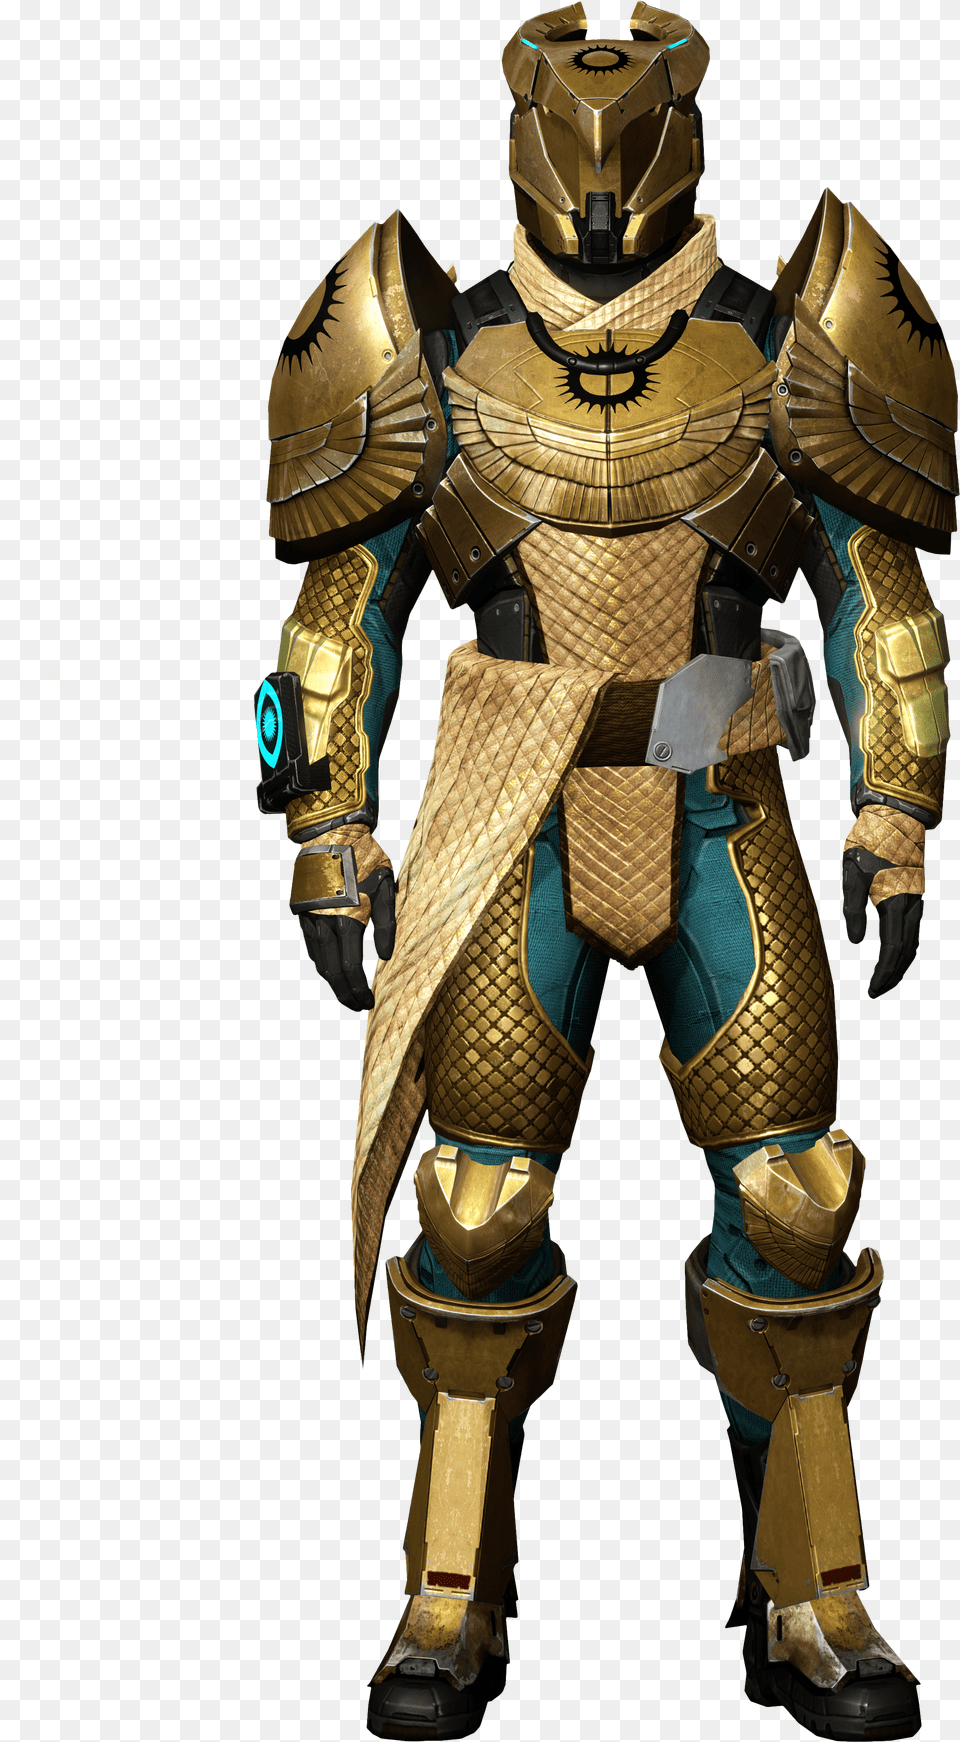 Destiny Helmet Destiny Trials Titan Armor, Clothing, Hat, Magician, Performer Png Image